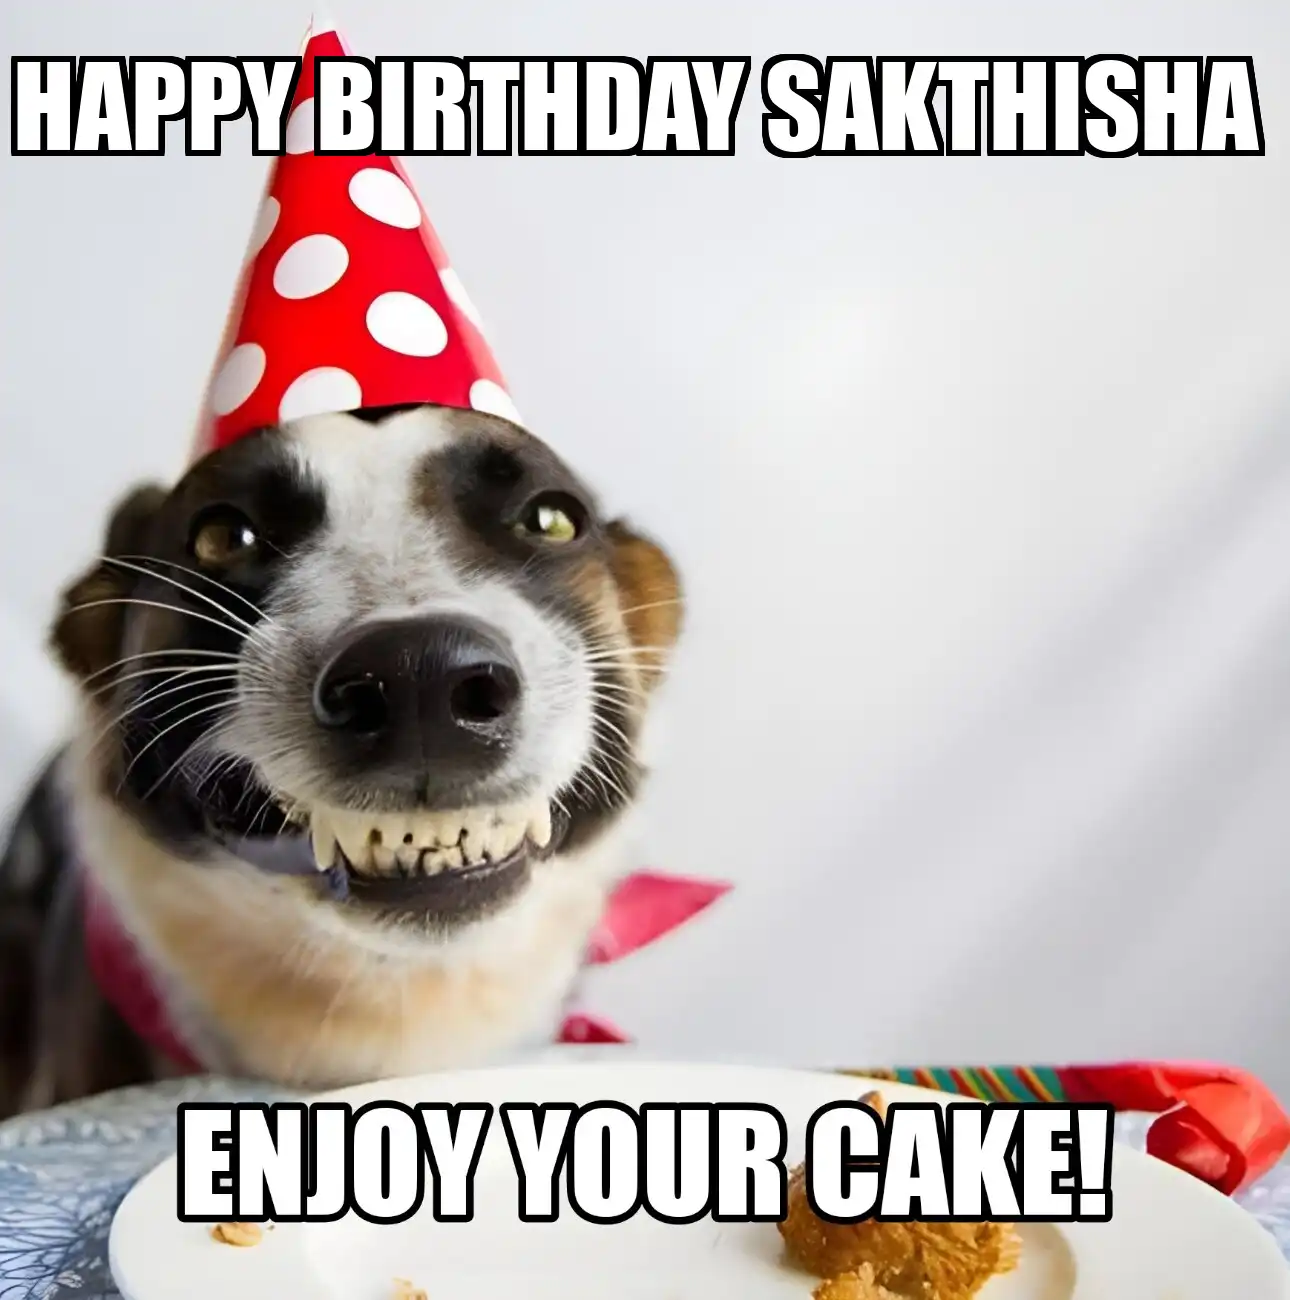 Happy Birthday Sakthisha Enjoy Your Cake Dog Meme